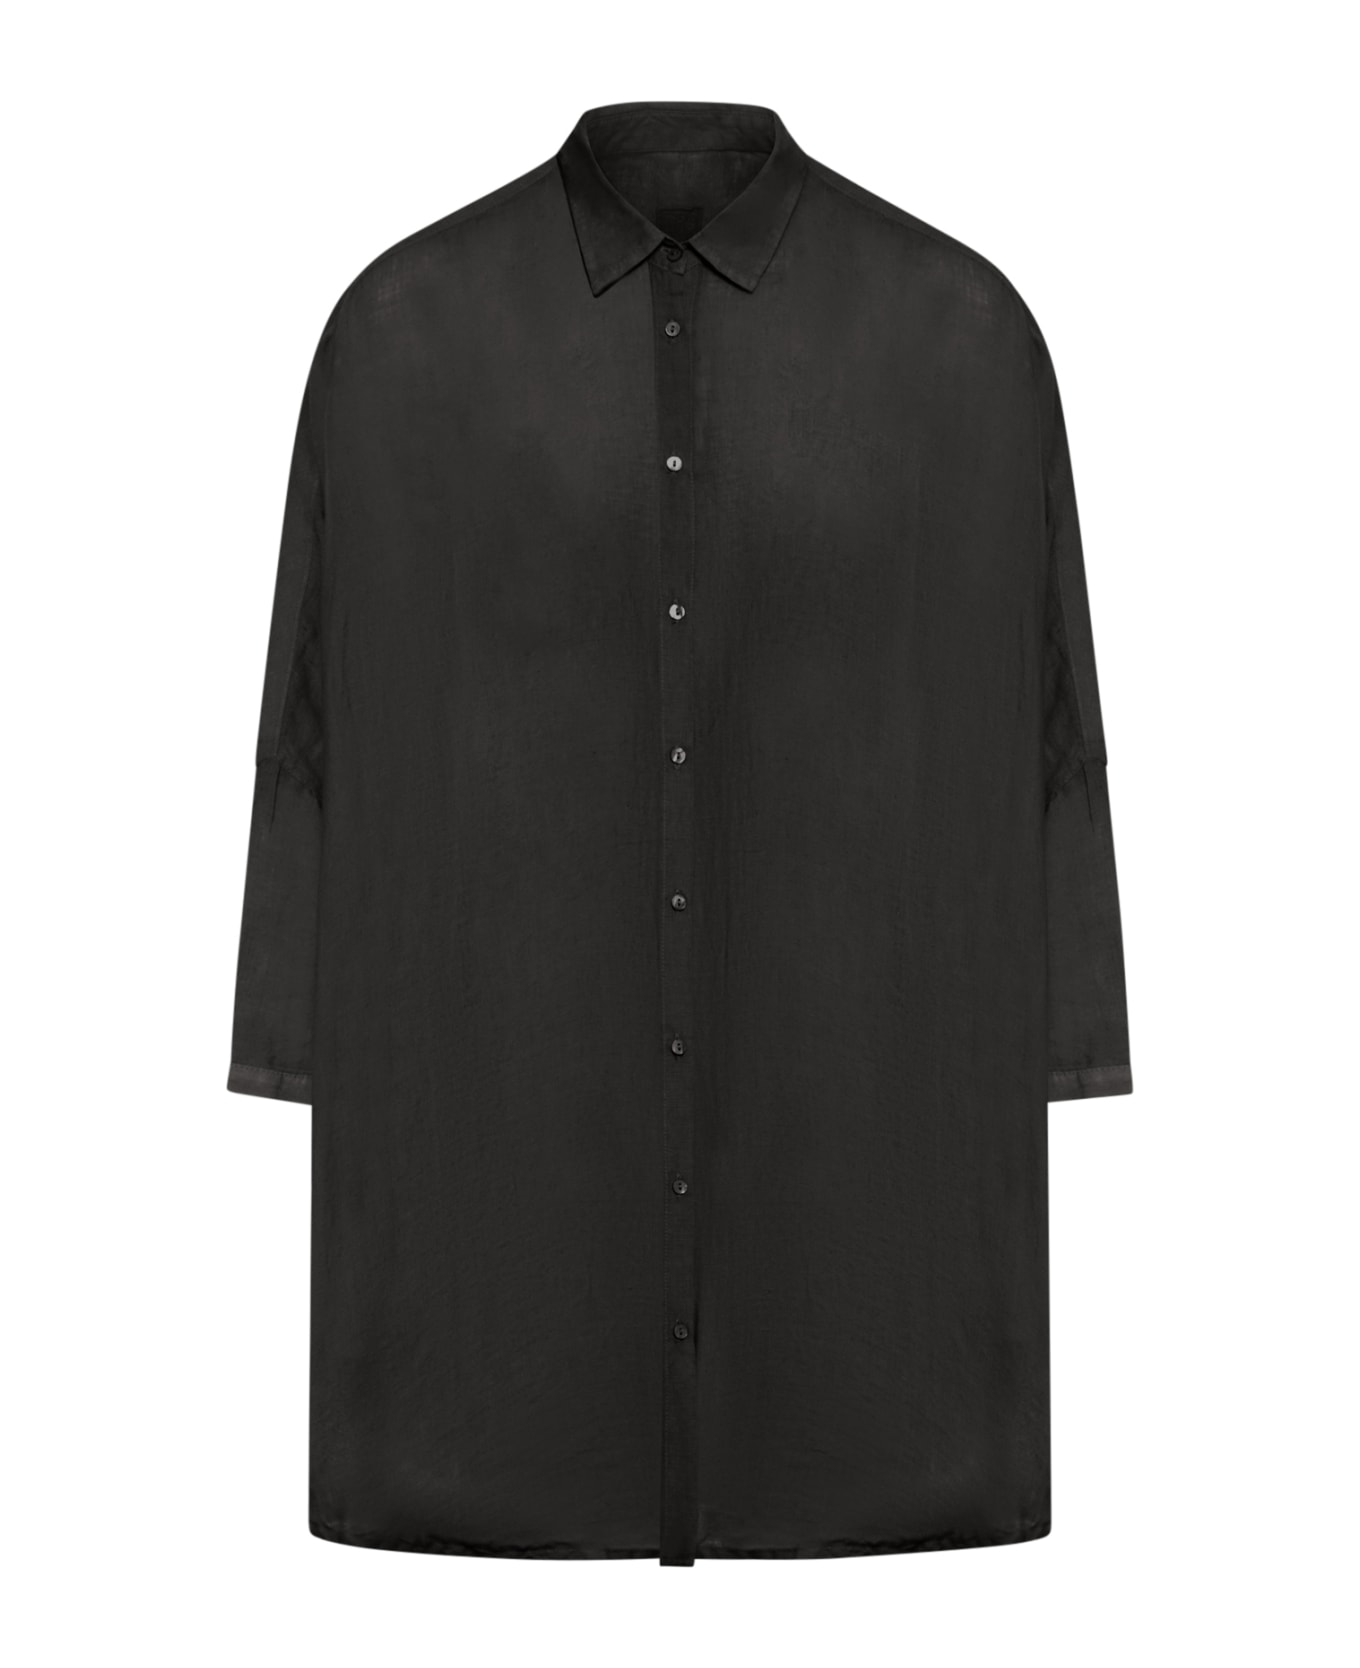 120% Lino Short Sleeve Woman Shirt - Black シャツ